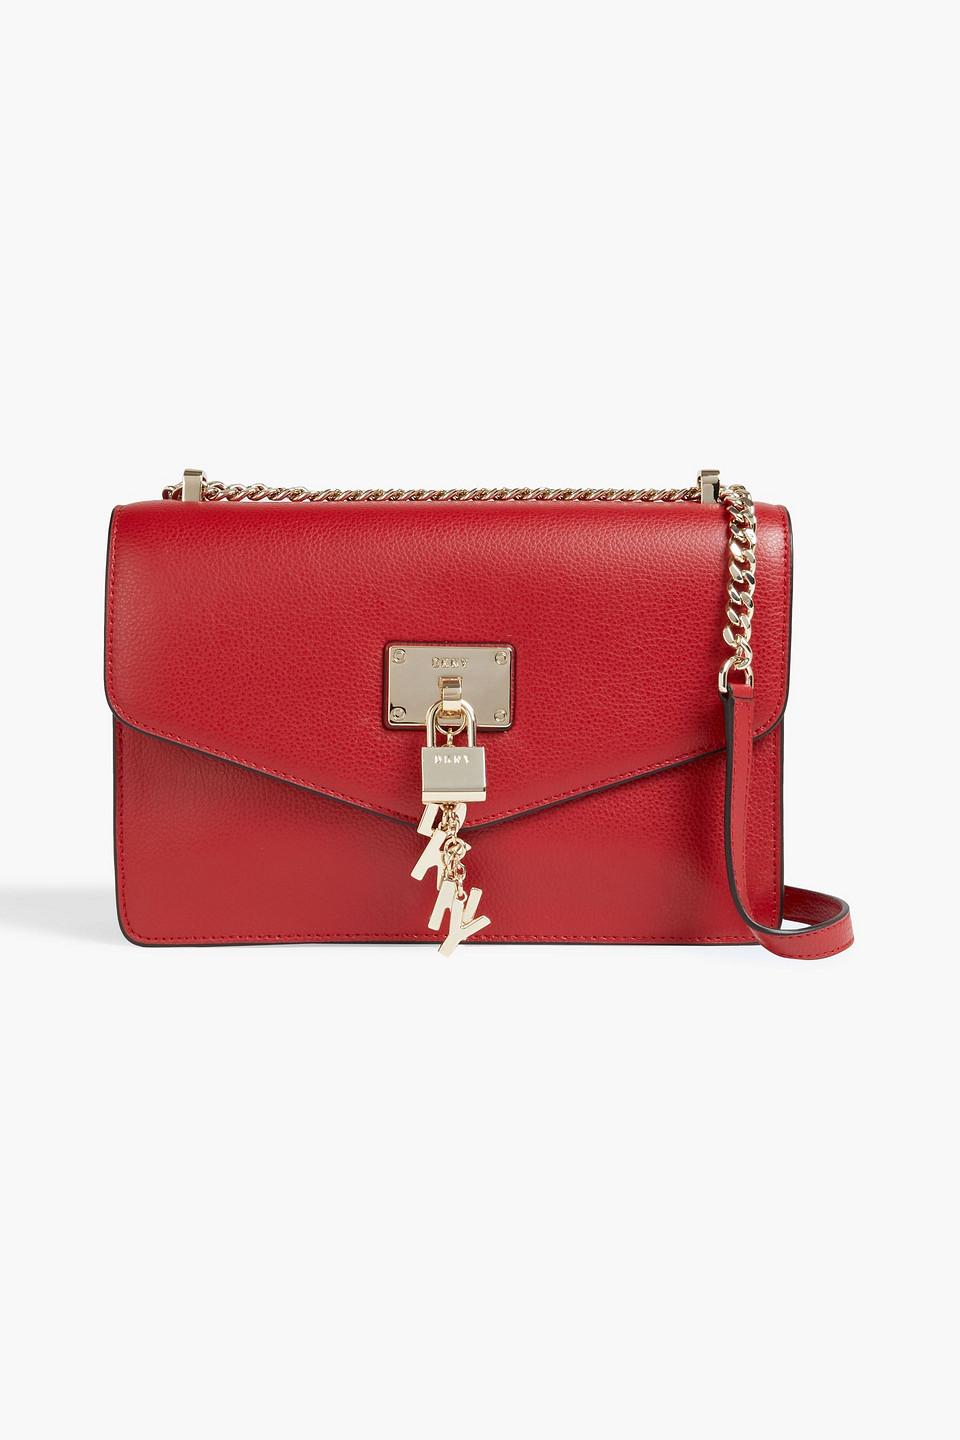 DKNY Elissa Large Embellished Leather Shoulder Bag in Red | Lyst